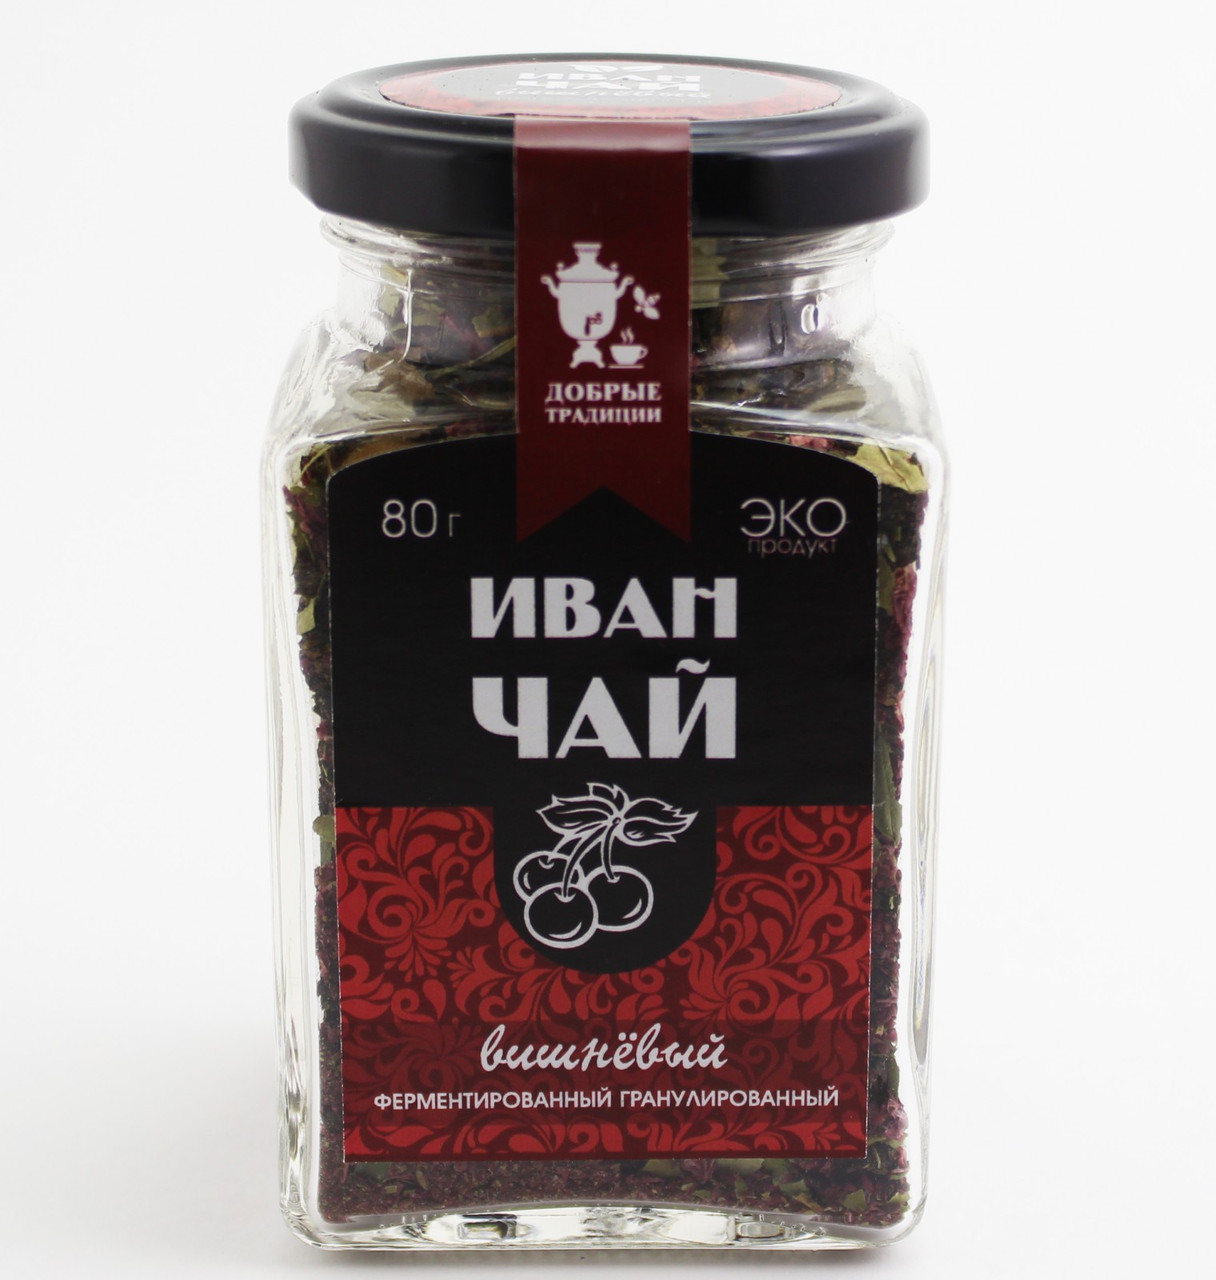 Иван чай Добрые традиции с вишней в гранулах, 80 гр.